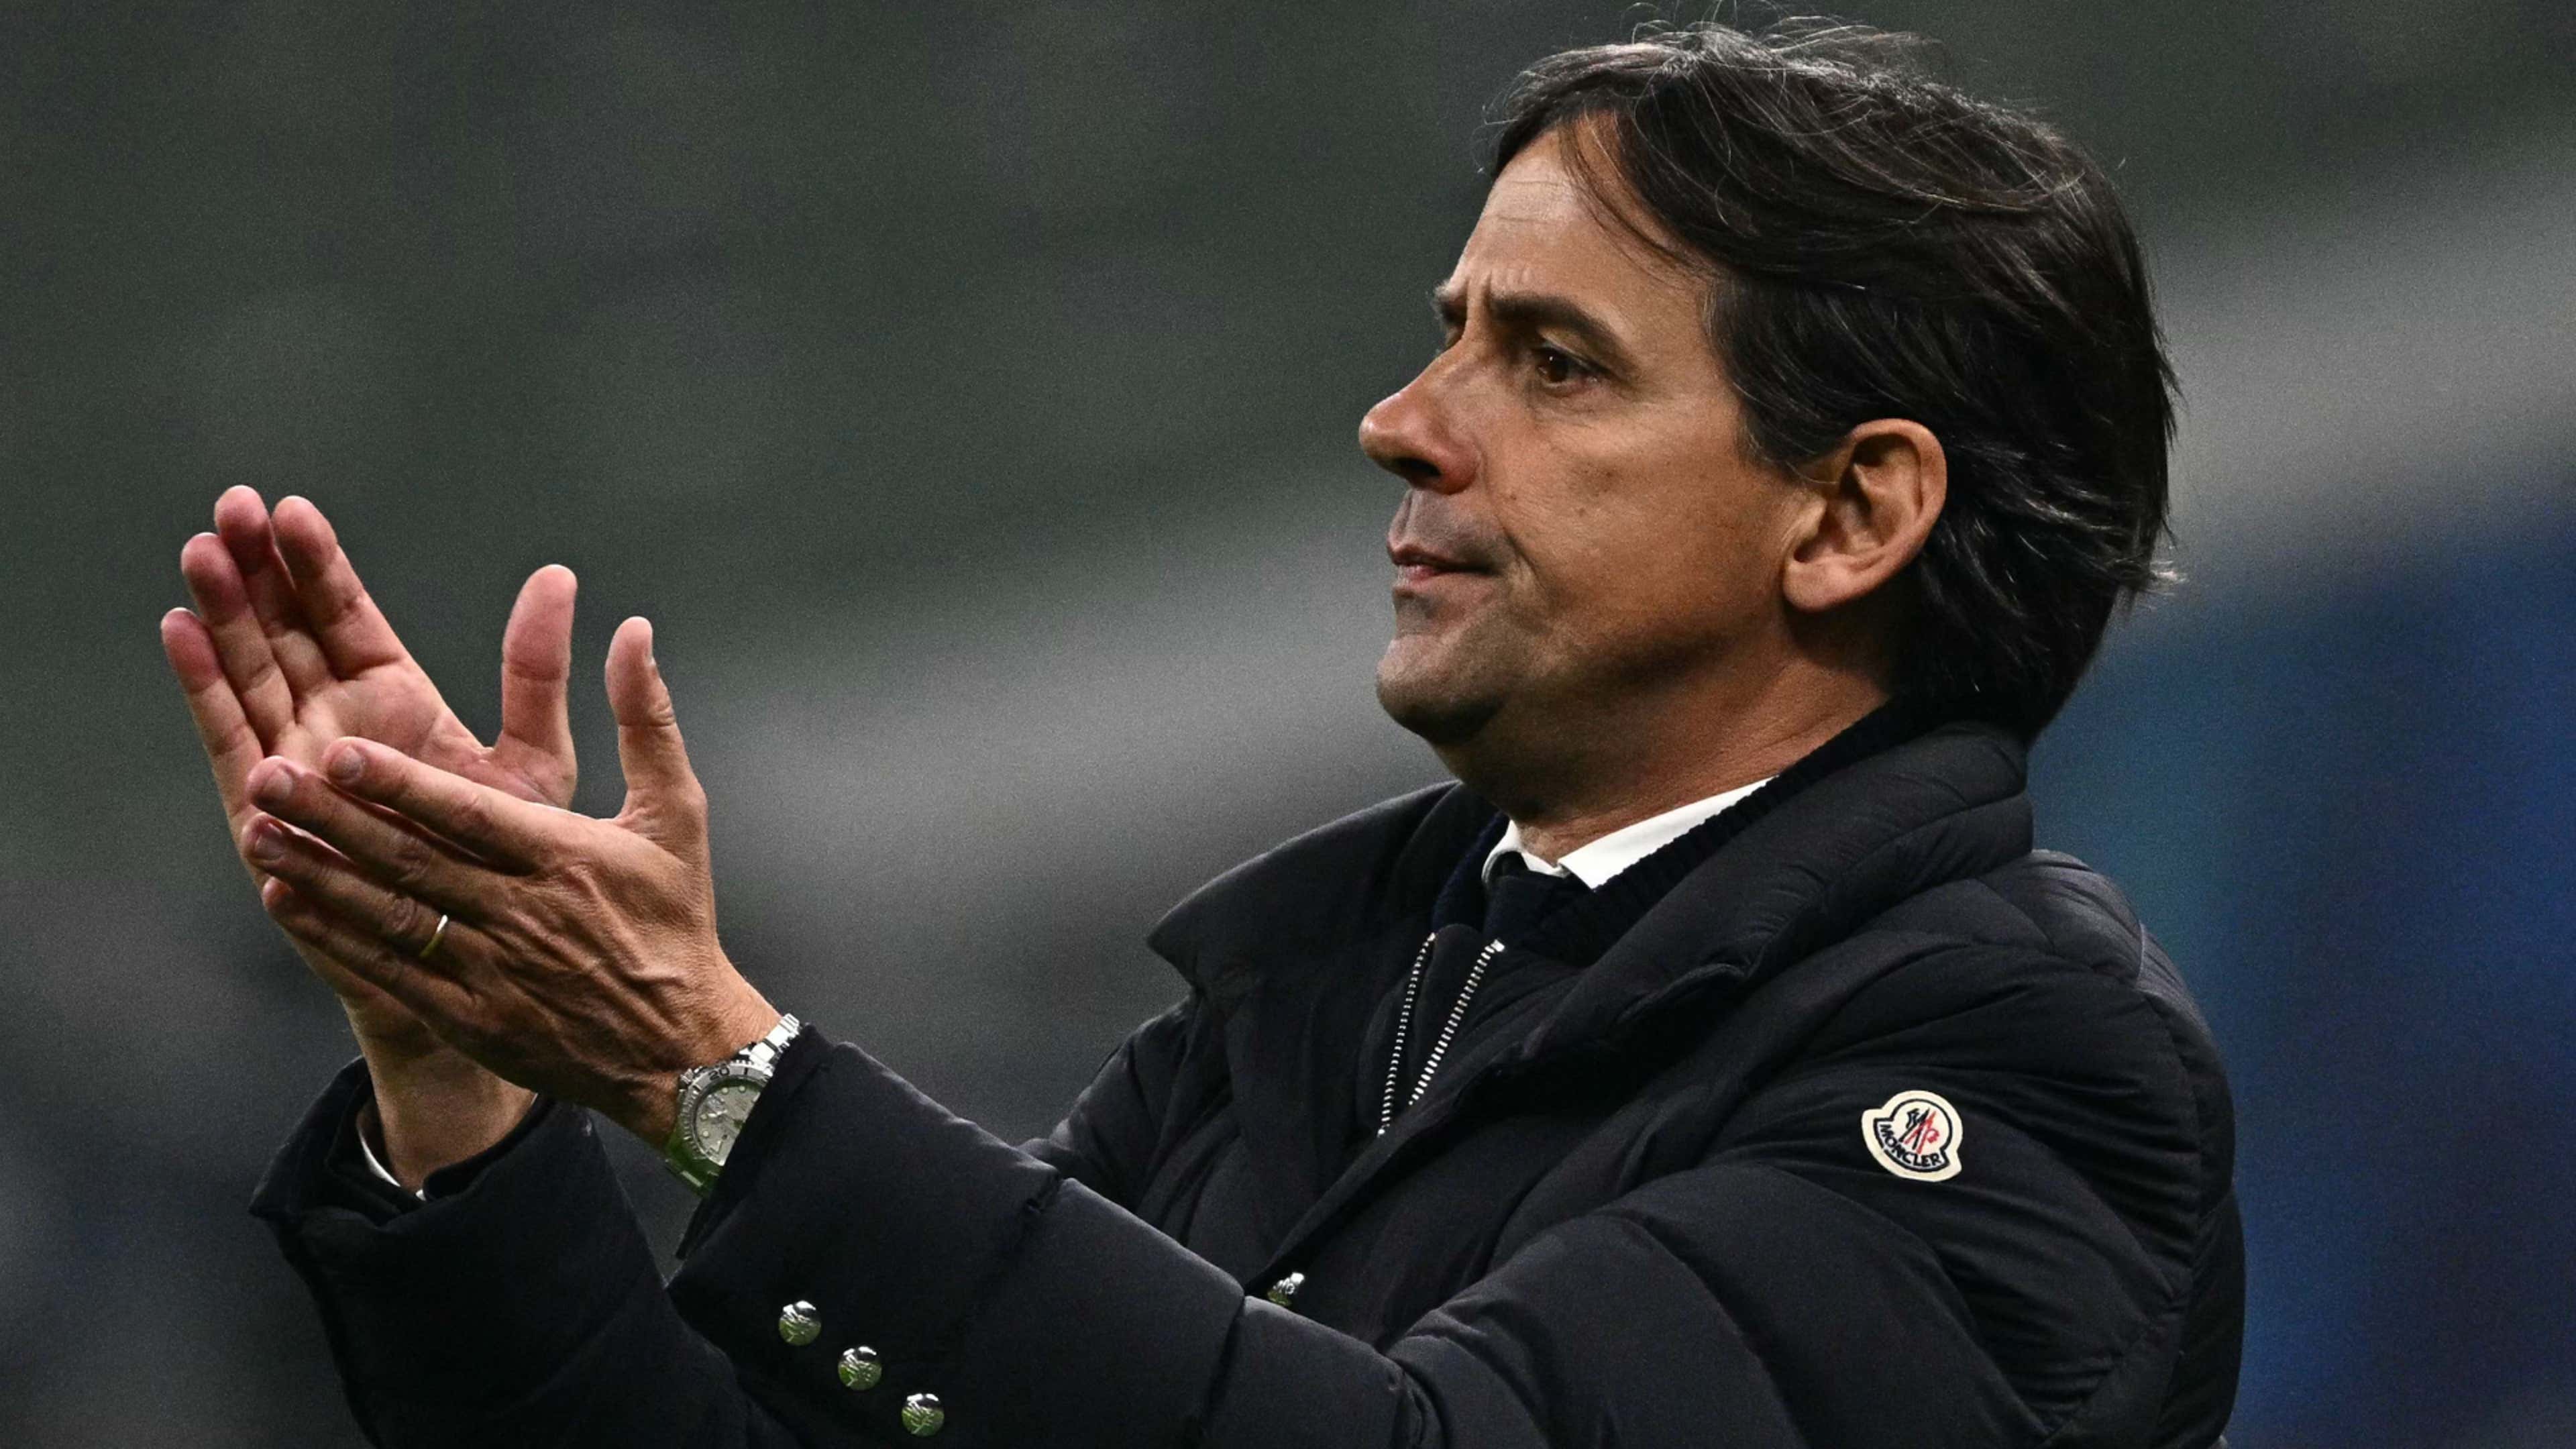 Inter Atletico, Inzaghi mischia le carte: provati titolari loro